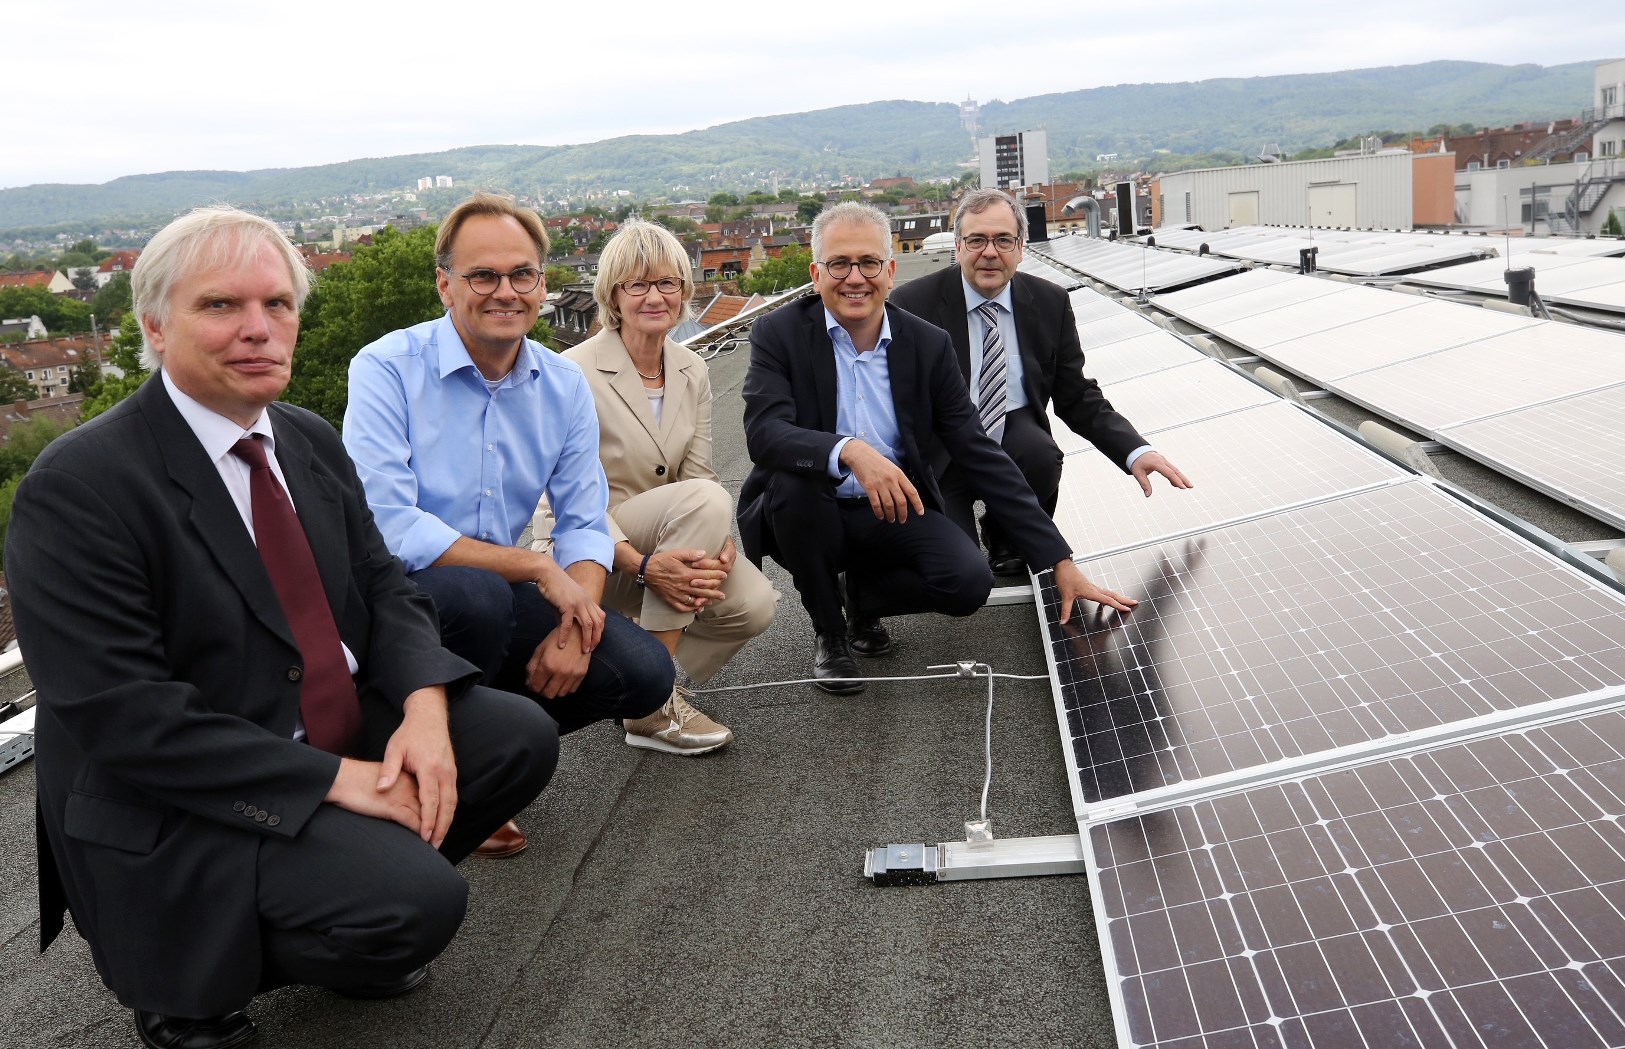 Al-Wazir: Uni Kassel gibt als Pilothochschule wichtige Impulse für nachhaltige Energieerzeugung